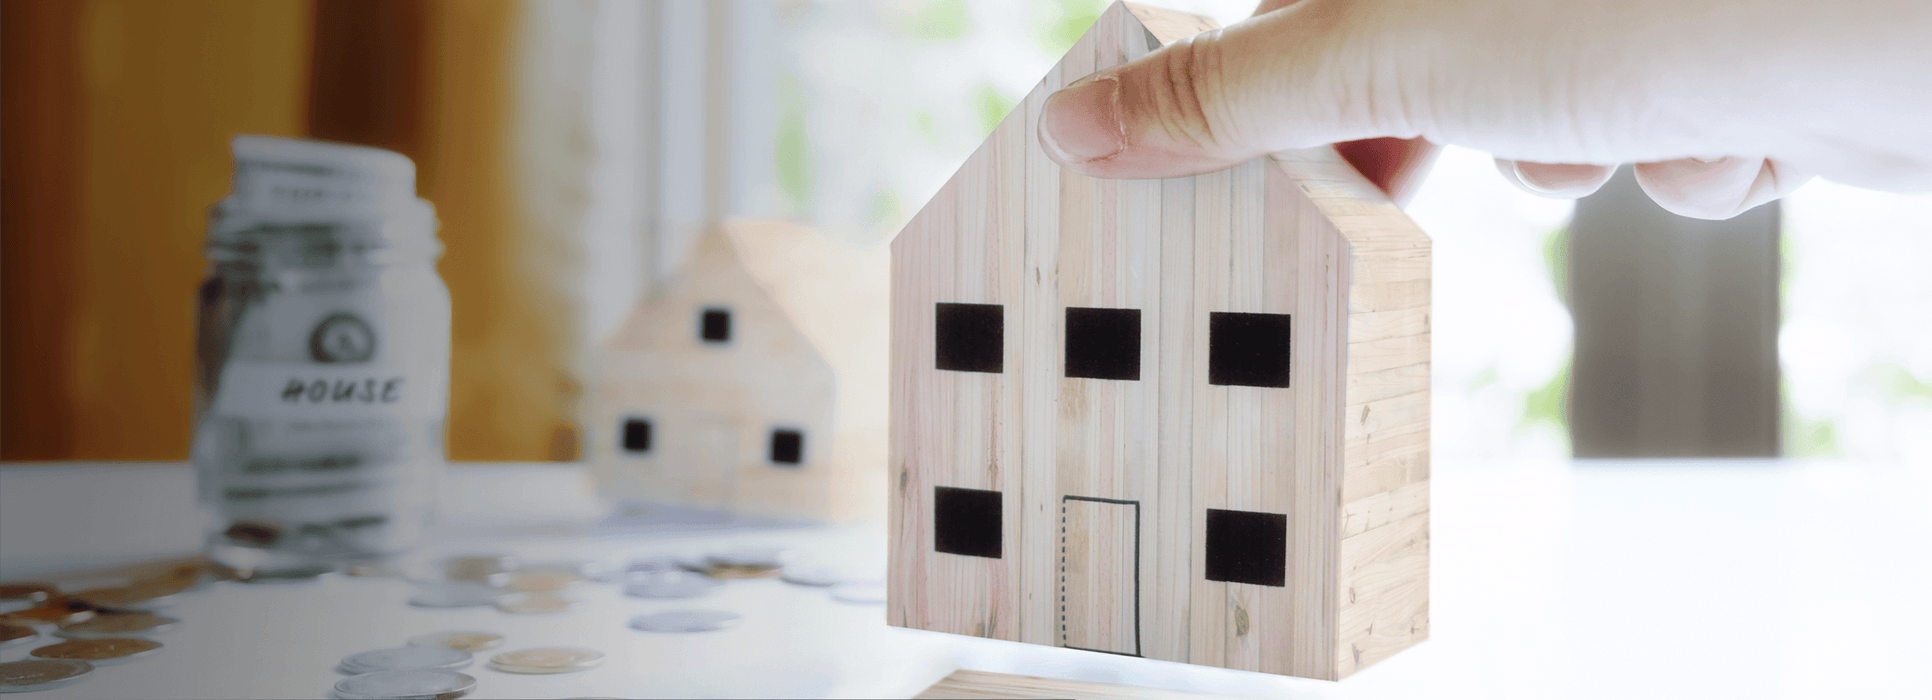 La tecnologia della casa intelligente può aumentare il valore immobiliare?